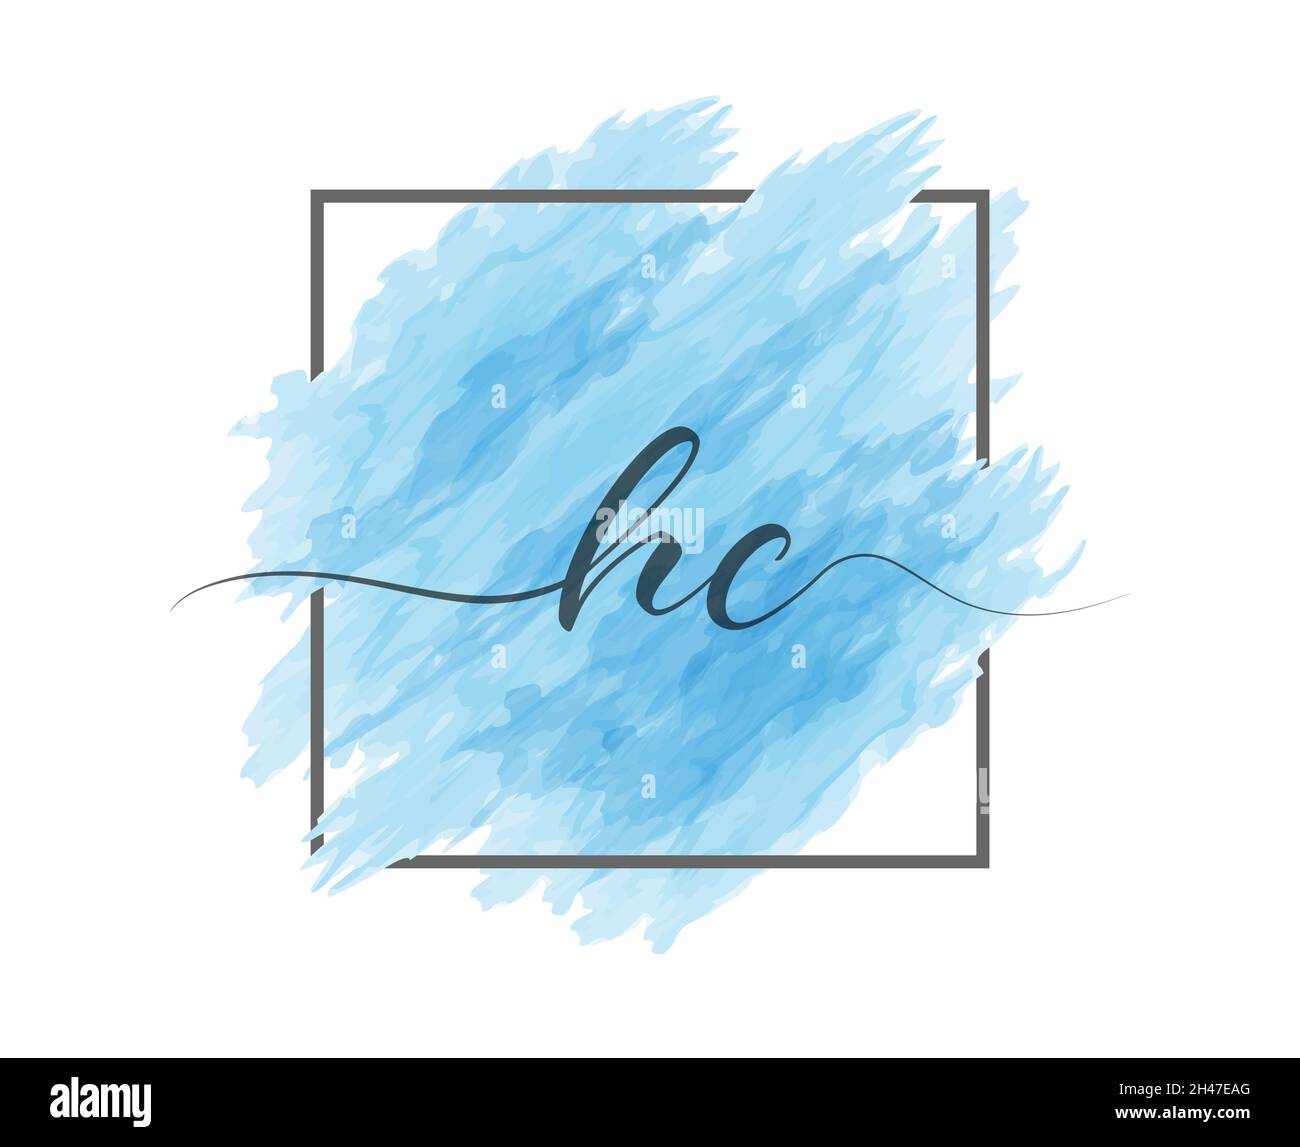 Las letras minúsculas caligráficas H y C se escriben en una línea sólida sobre un fondo coloreado en un marco. Estilo simple Ilustración del Vector